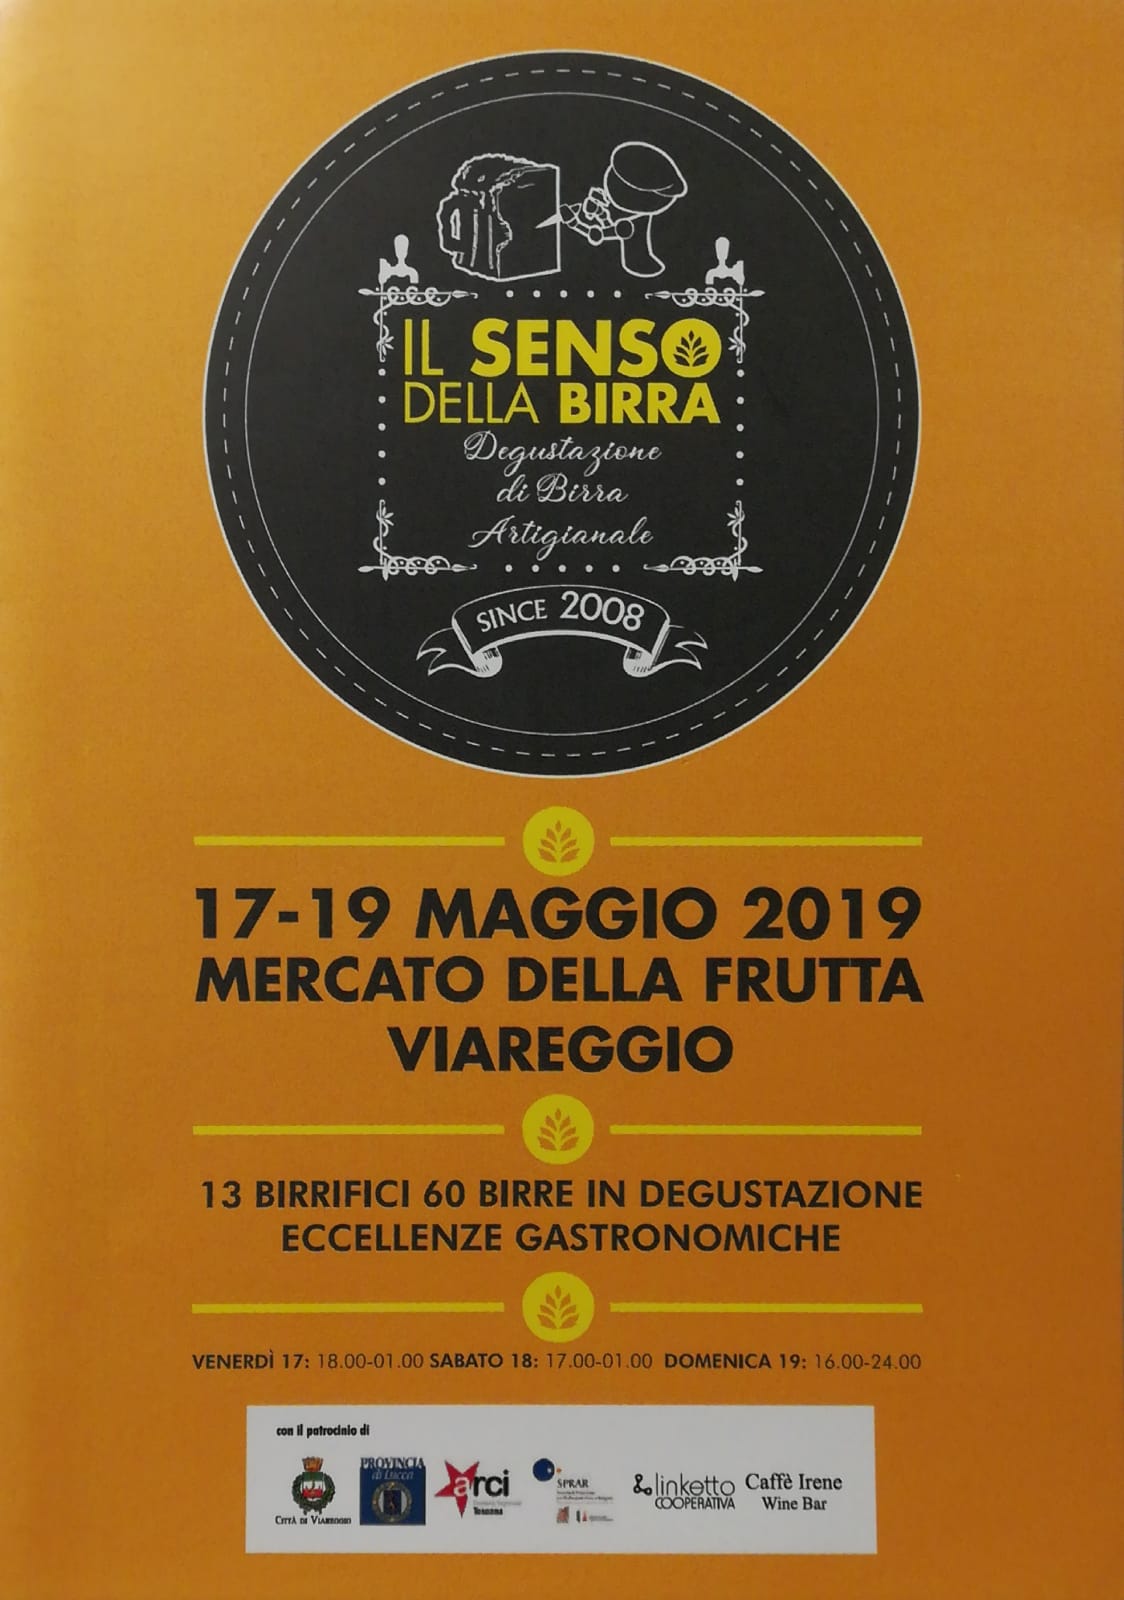 Torna il Festival “Il senso della birra”, la 3 giorni a Viareggio